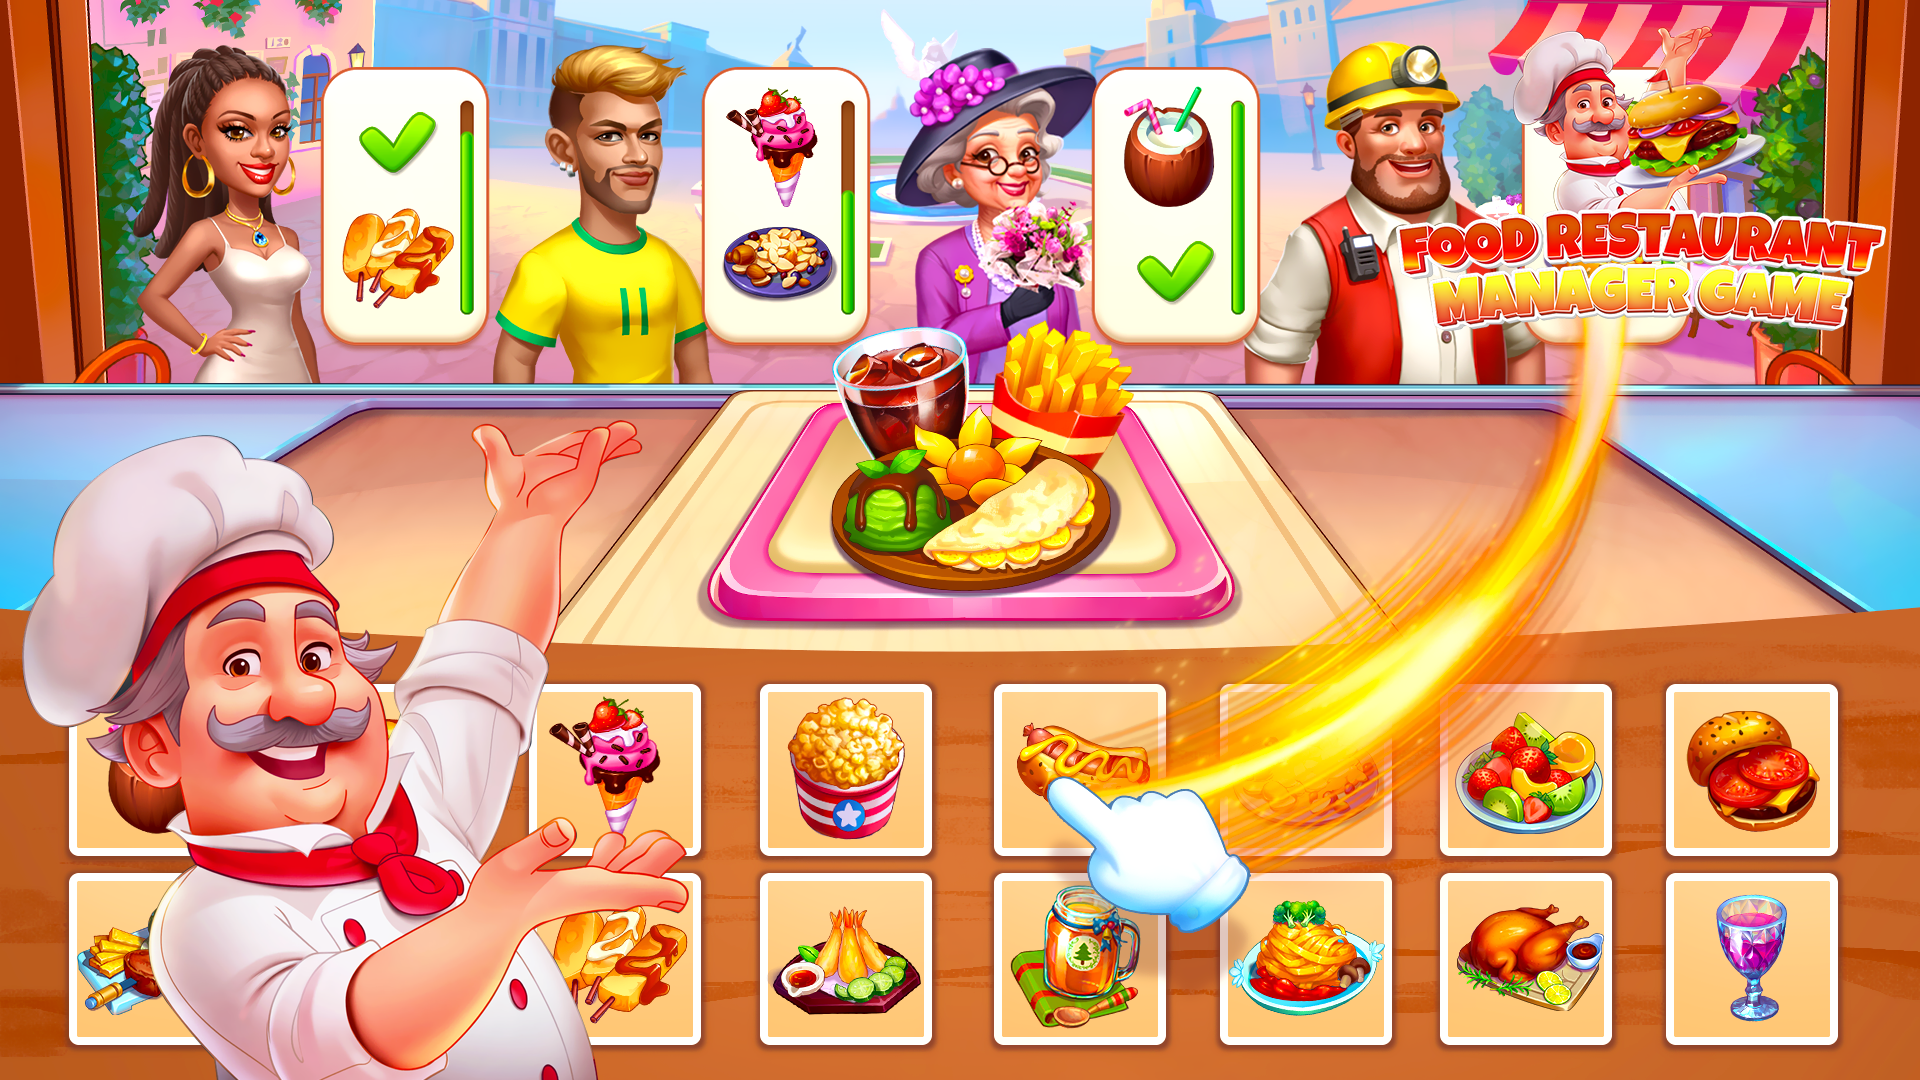 Screenshot 1 of Trò chơi quản lý nhà hàng thực phẩm 1.2